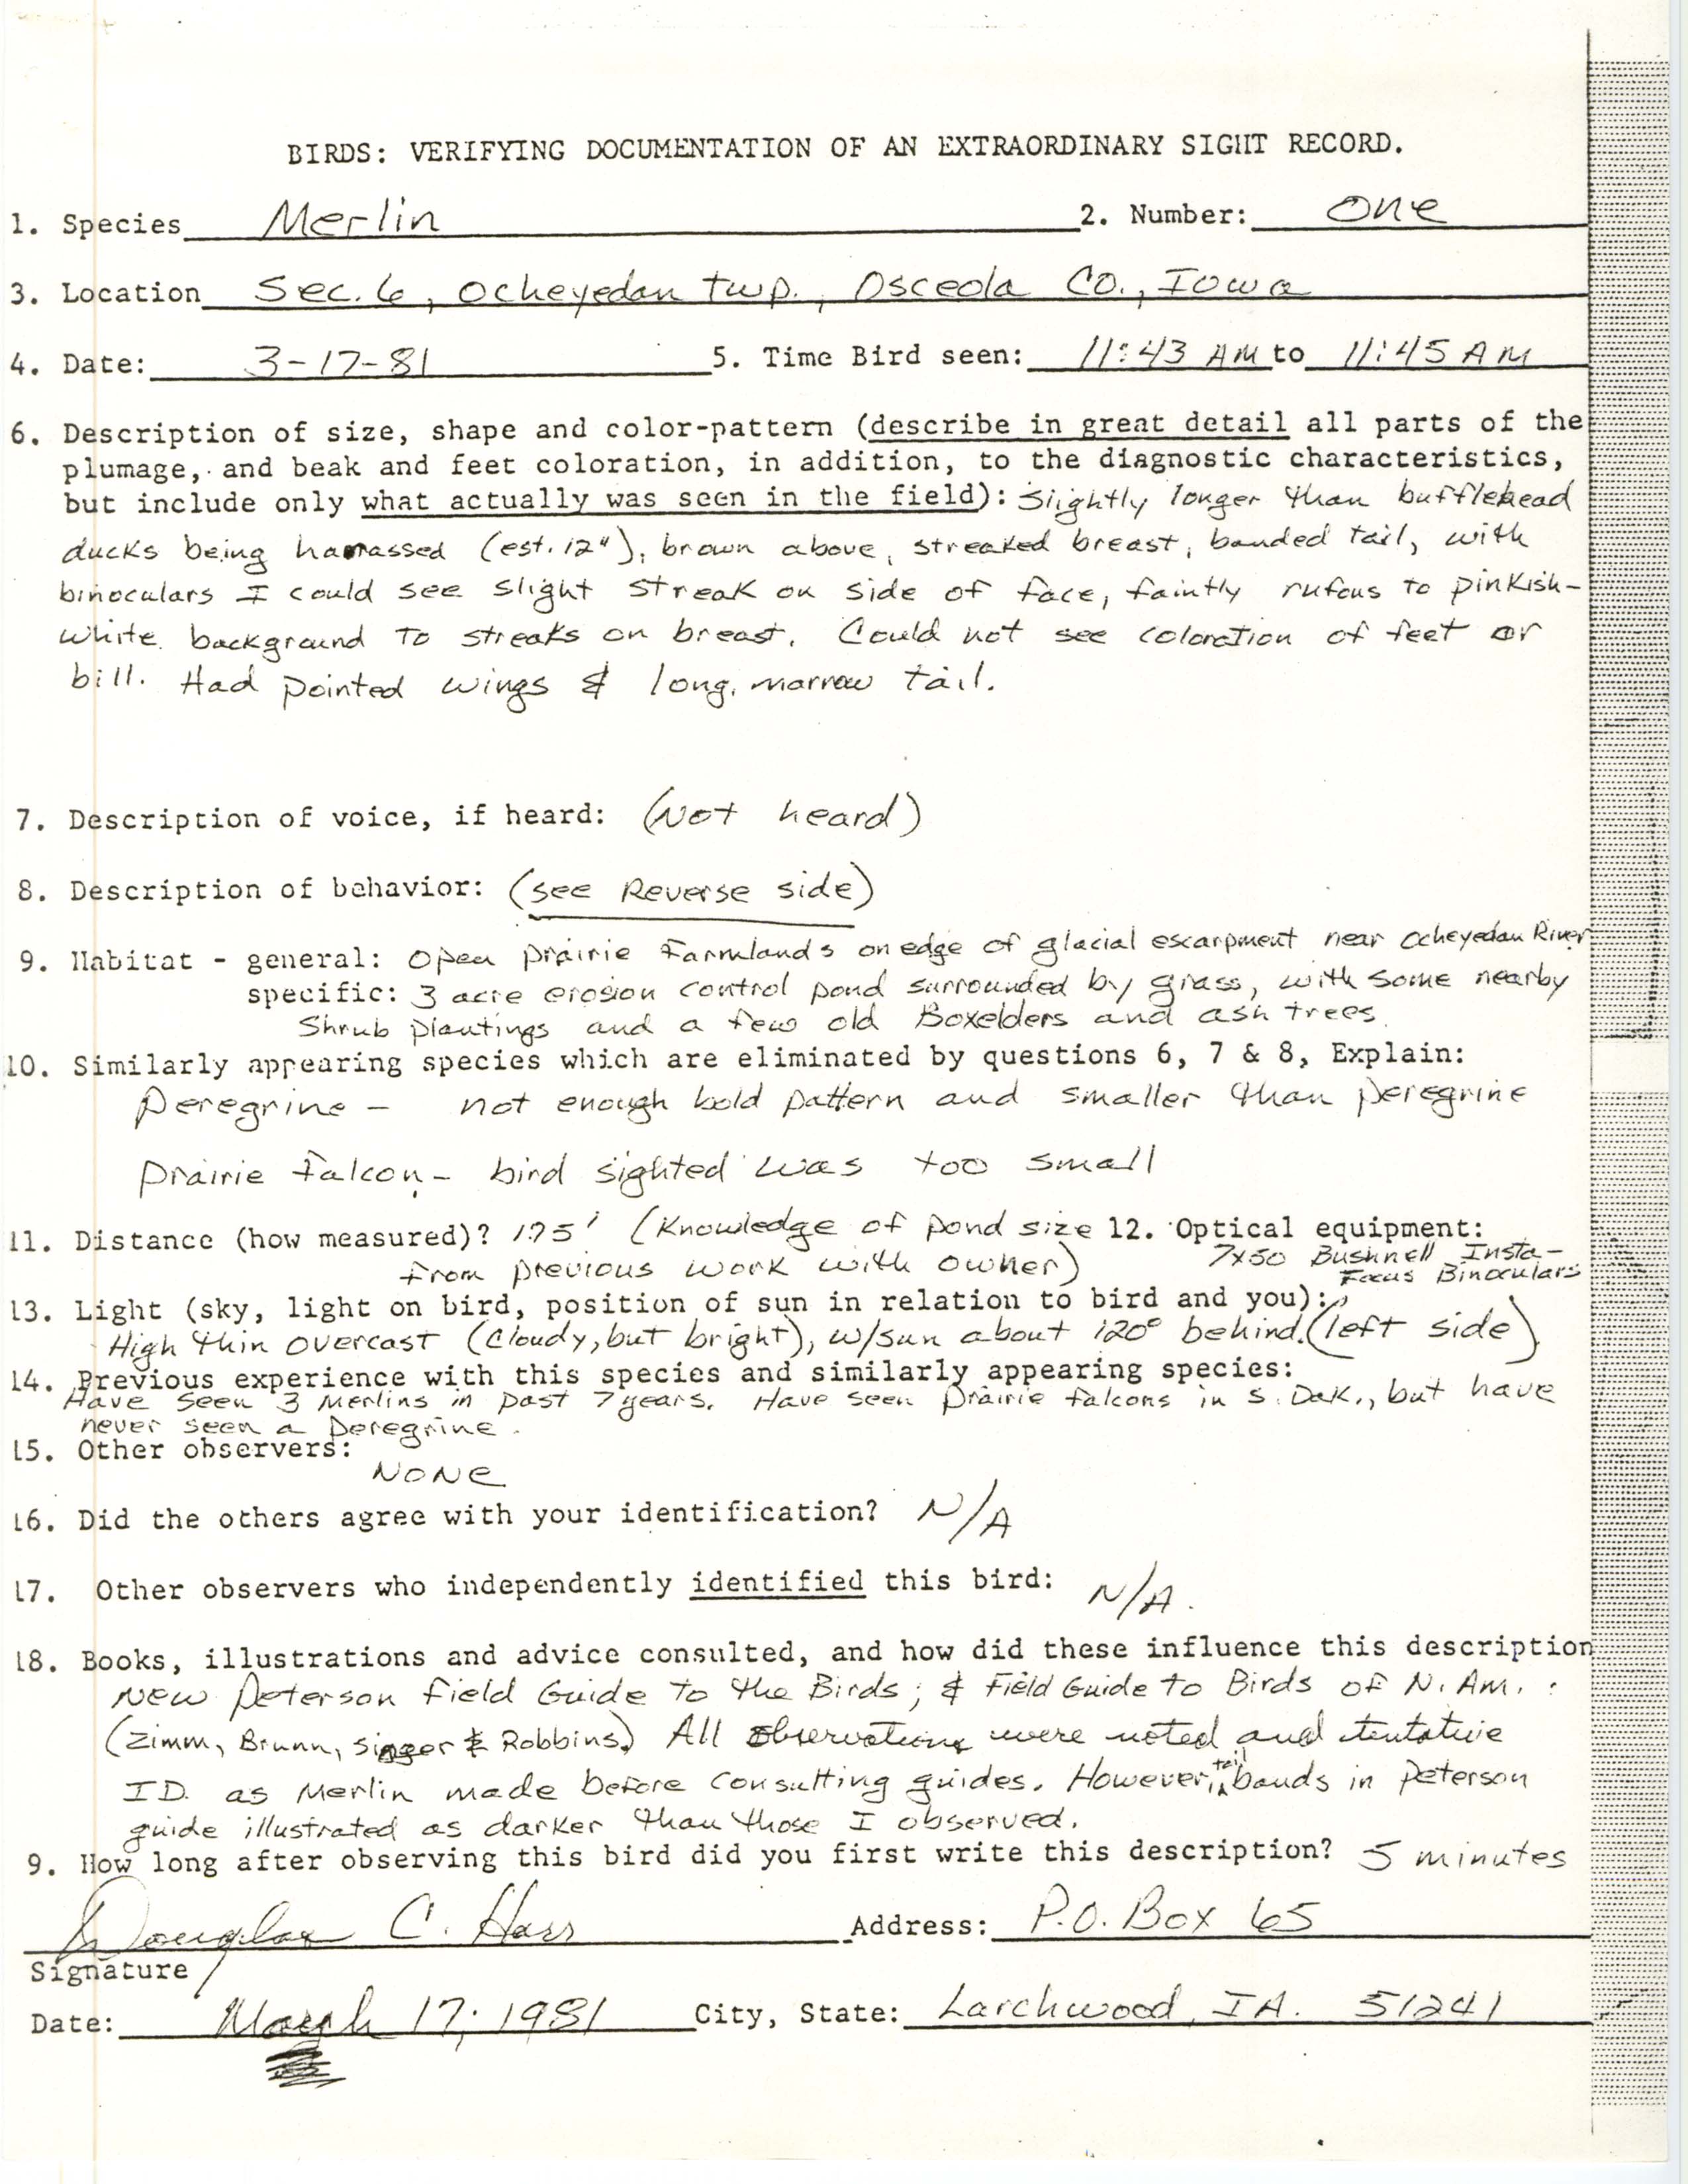 Rare bird documentation form for Merlin at Ocheyedan Township, 1981